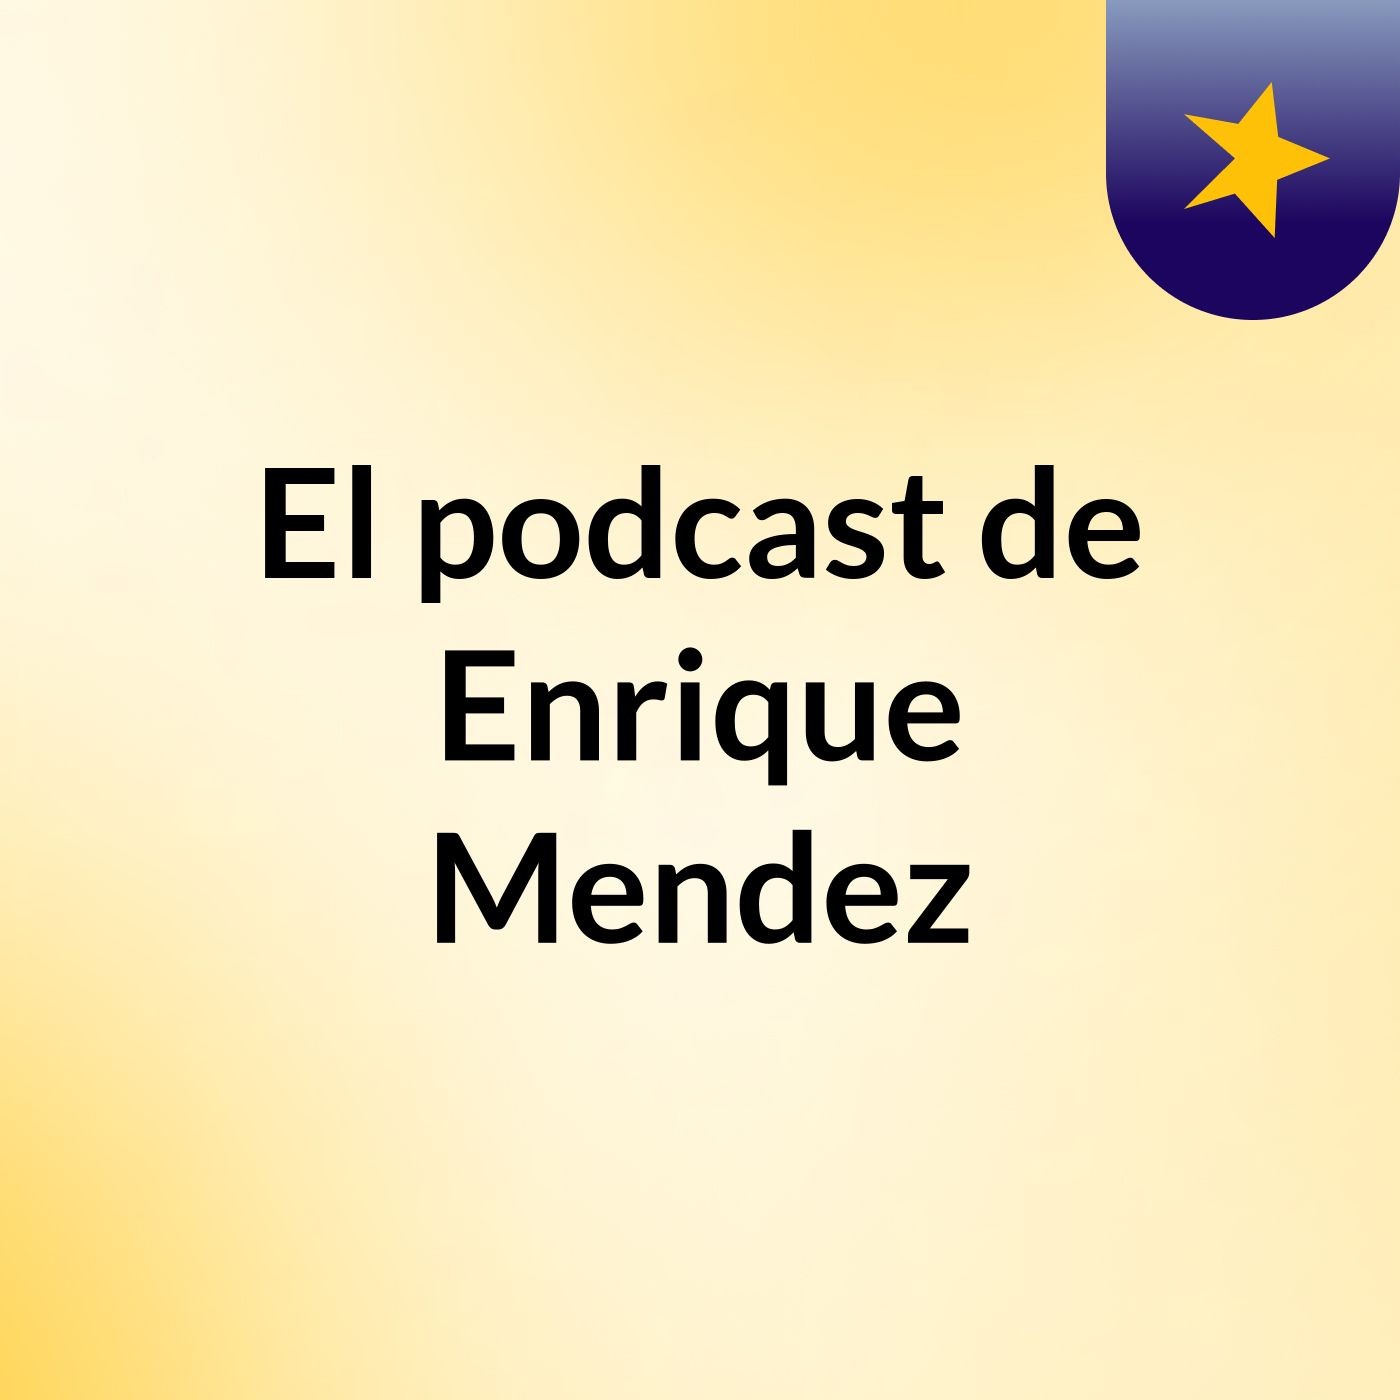 El podcast de Enrique Mendez